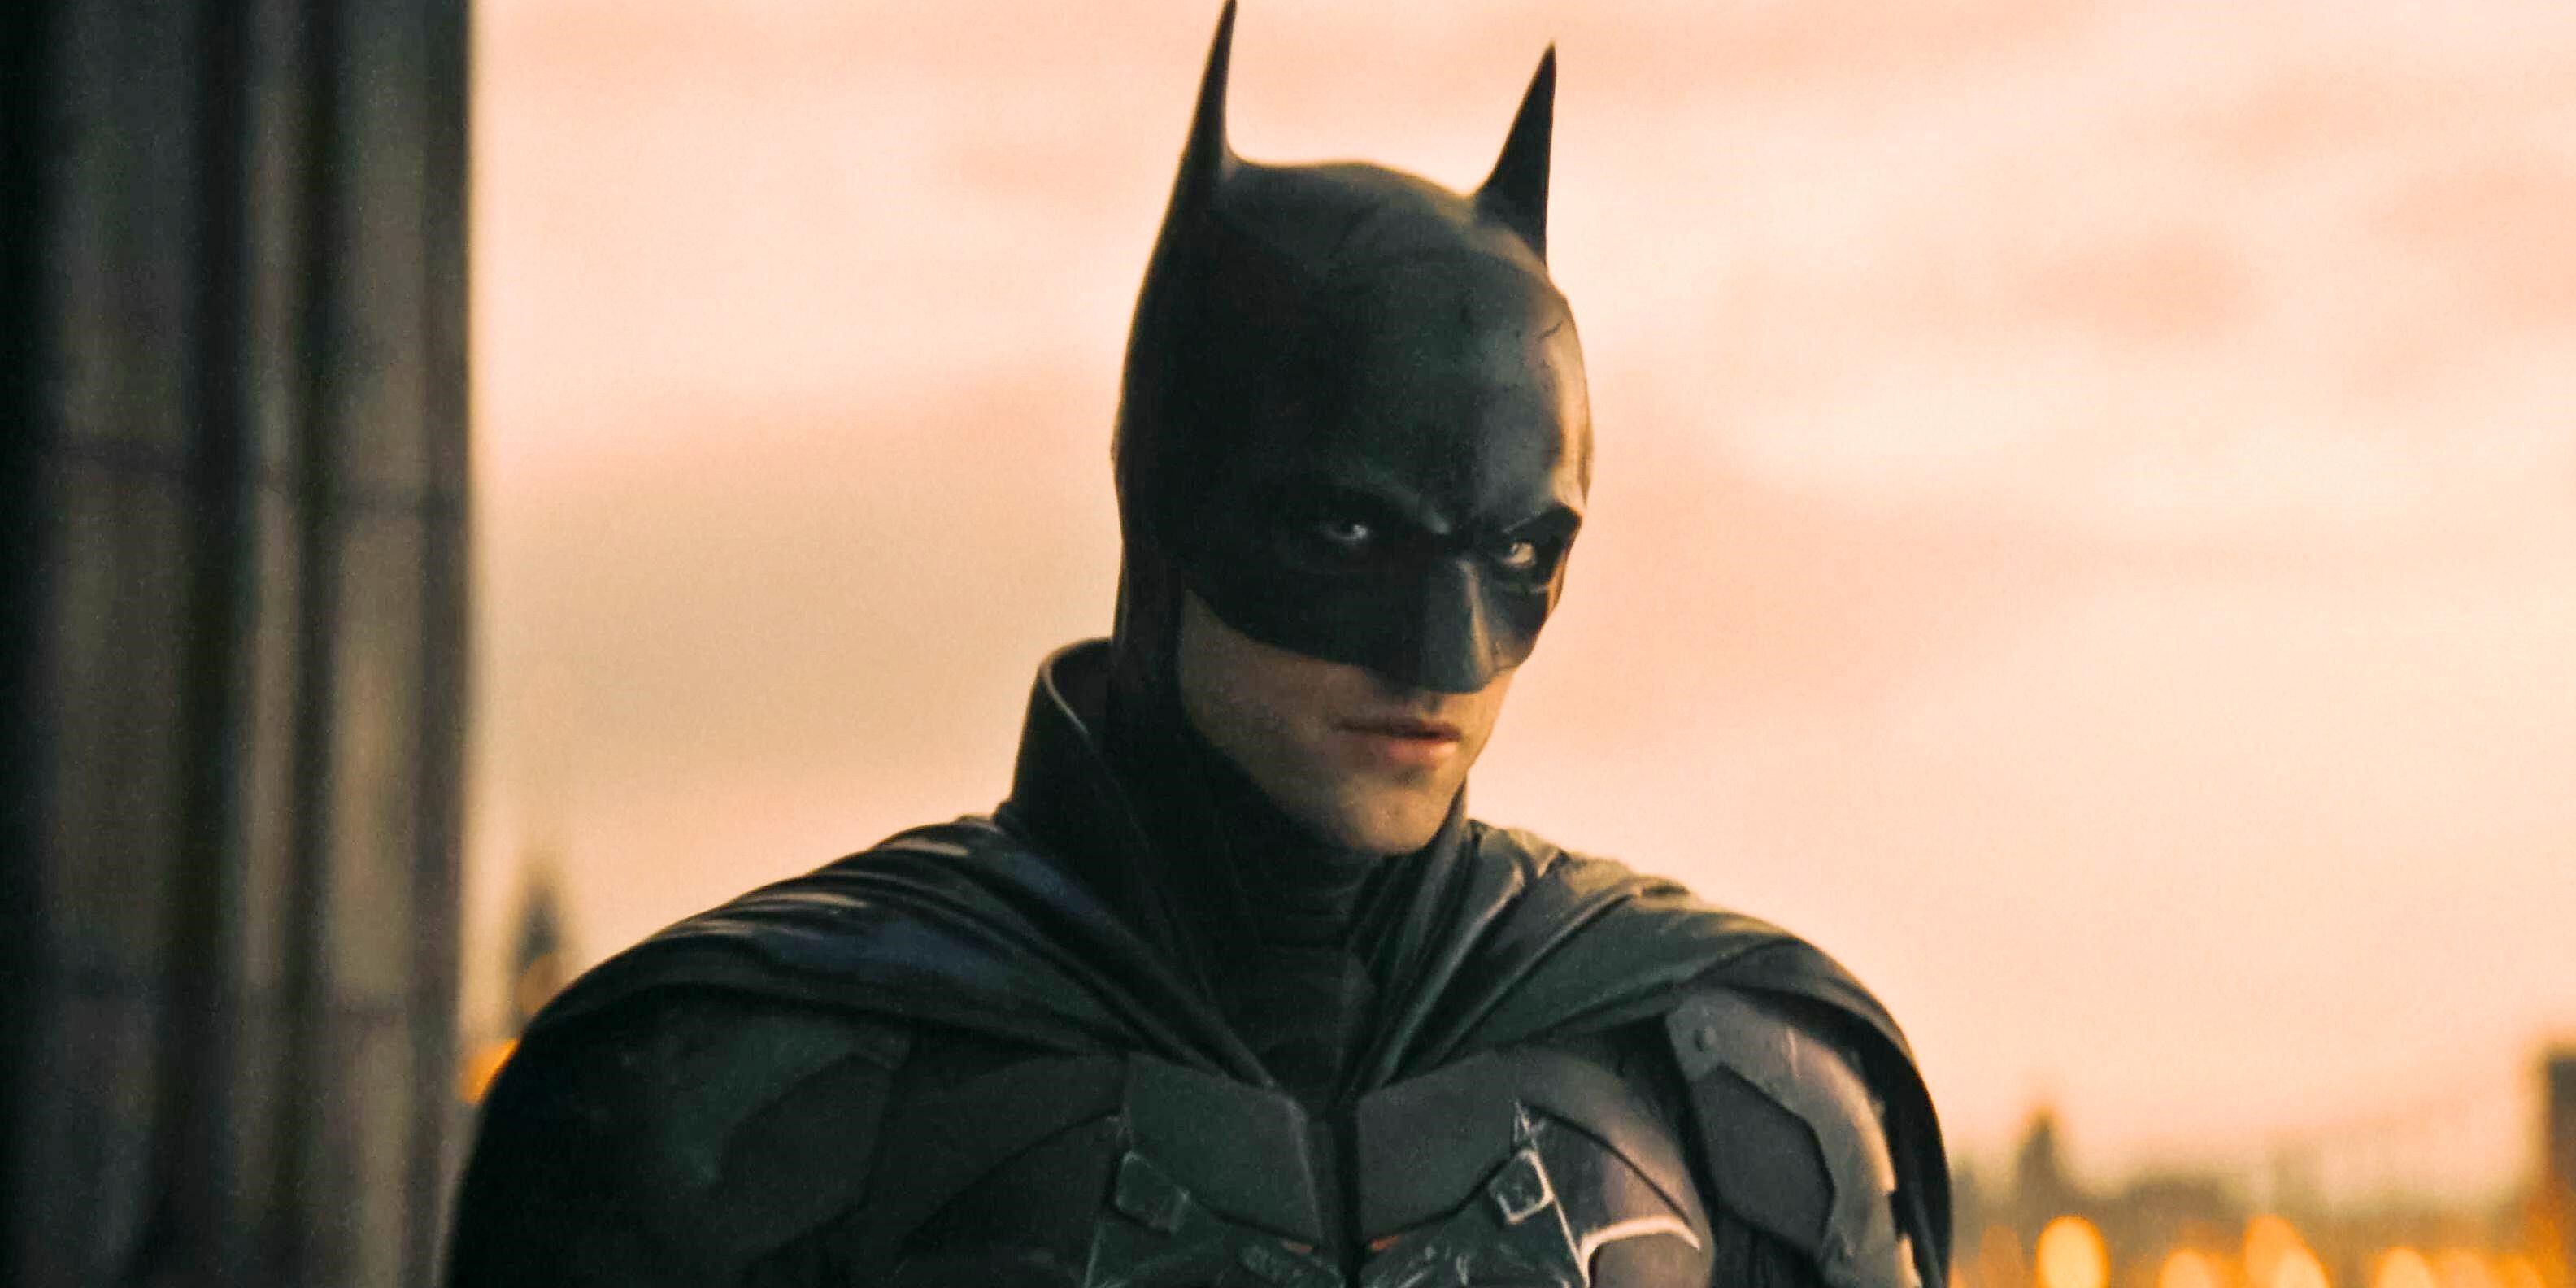 Robert Pattinson's Batman in his costumer and cowl, looking menacing.